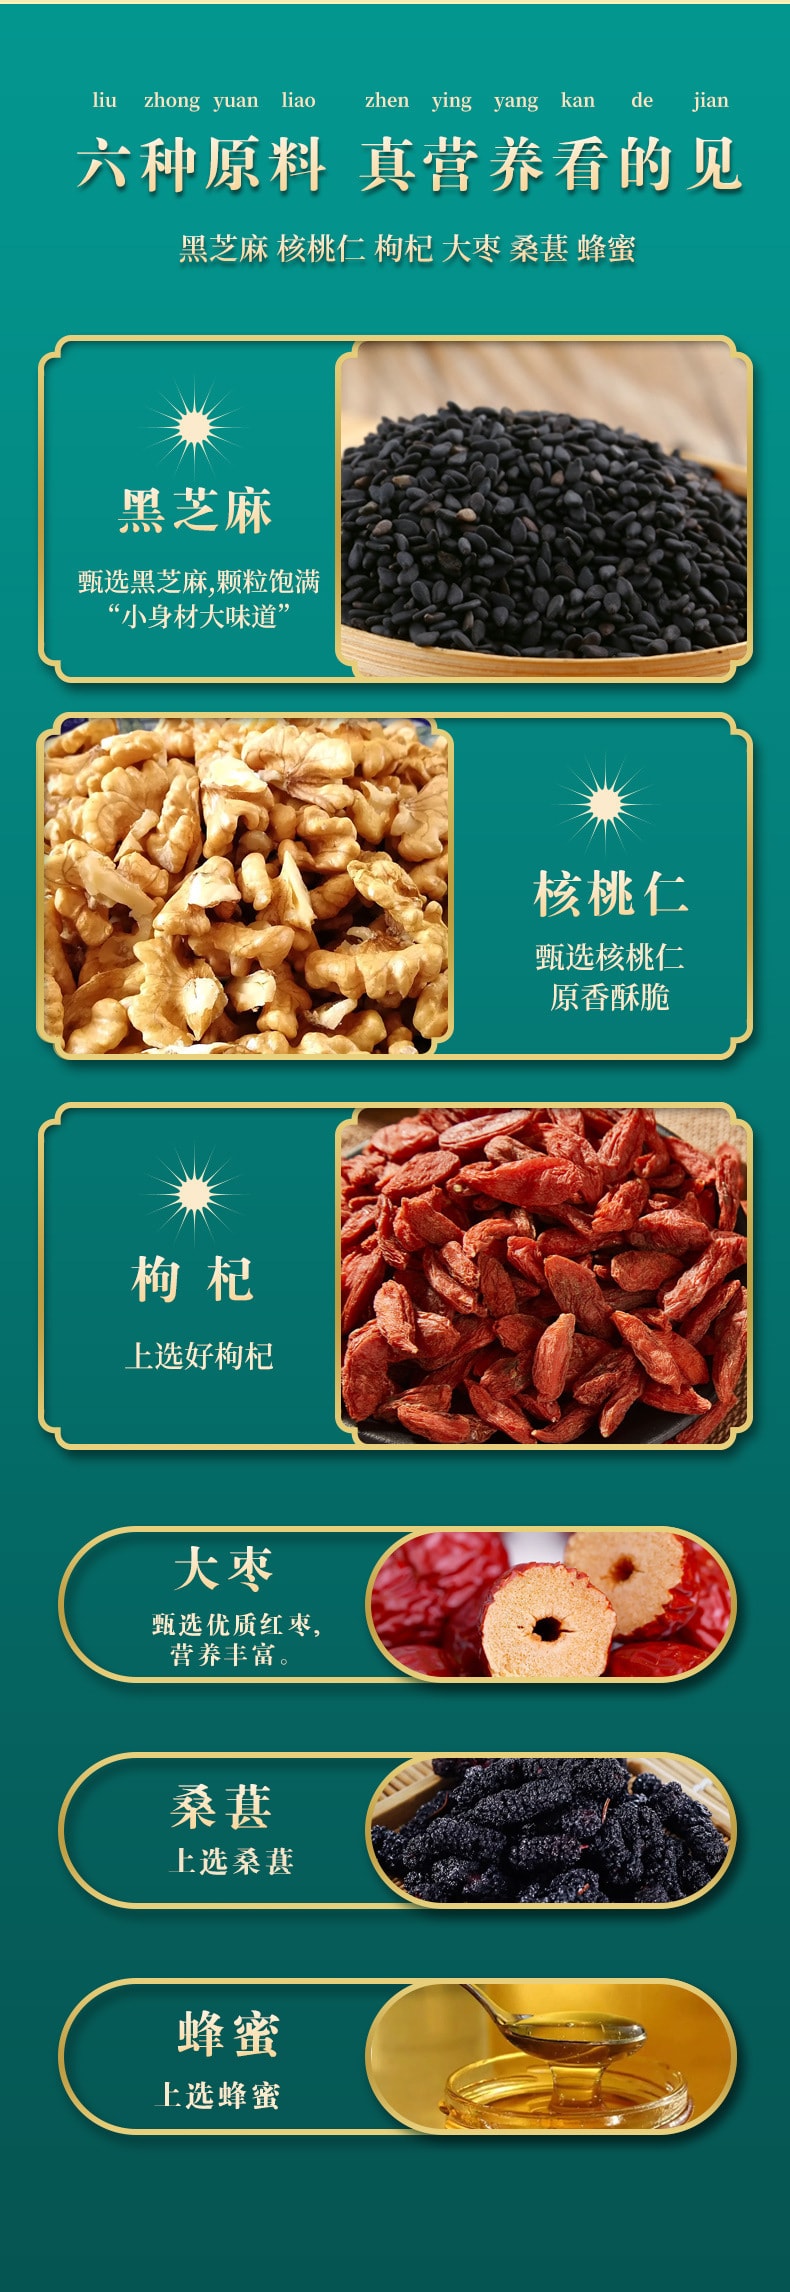 Wuzhen Black Sesame Pill Tonifying Qi Moistening Bowel Tonifying Kidney Jujube Walnut Wolfberry Mulberry Pill 120g/ box